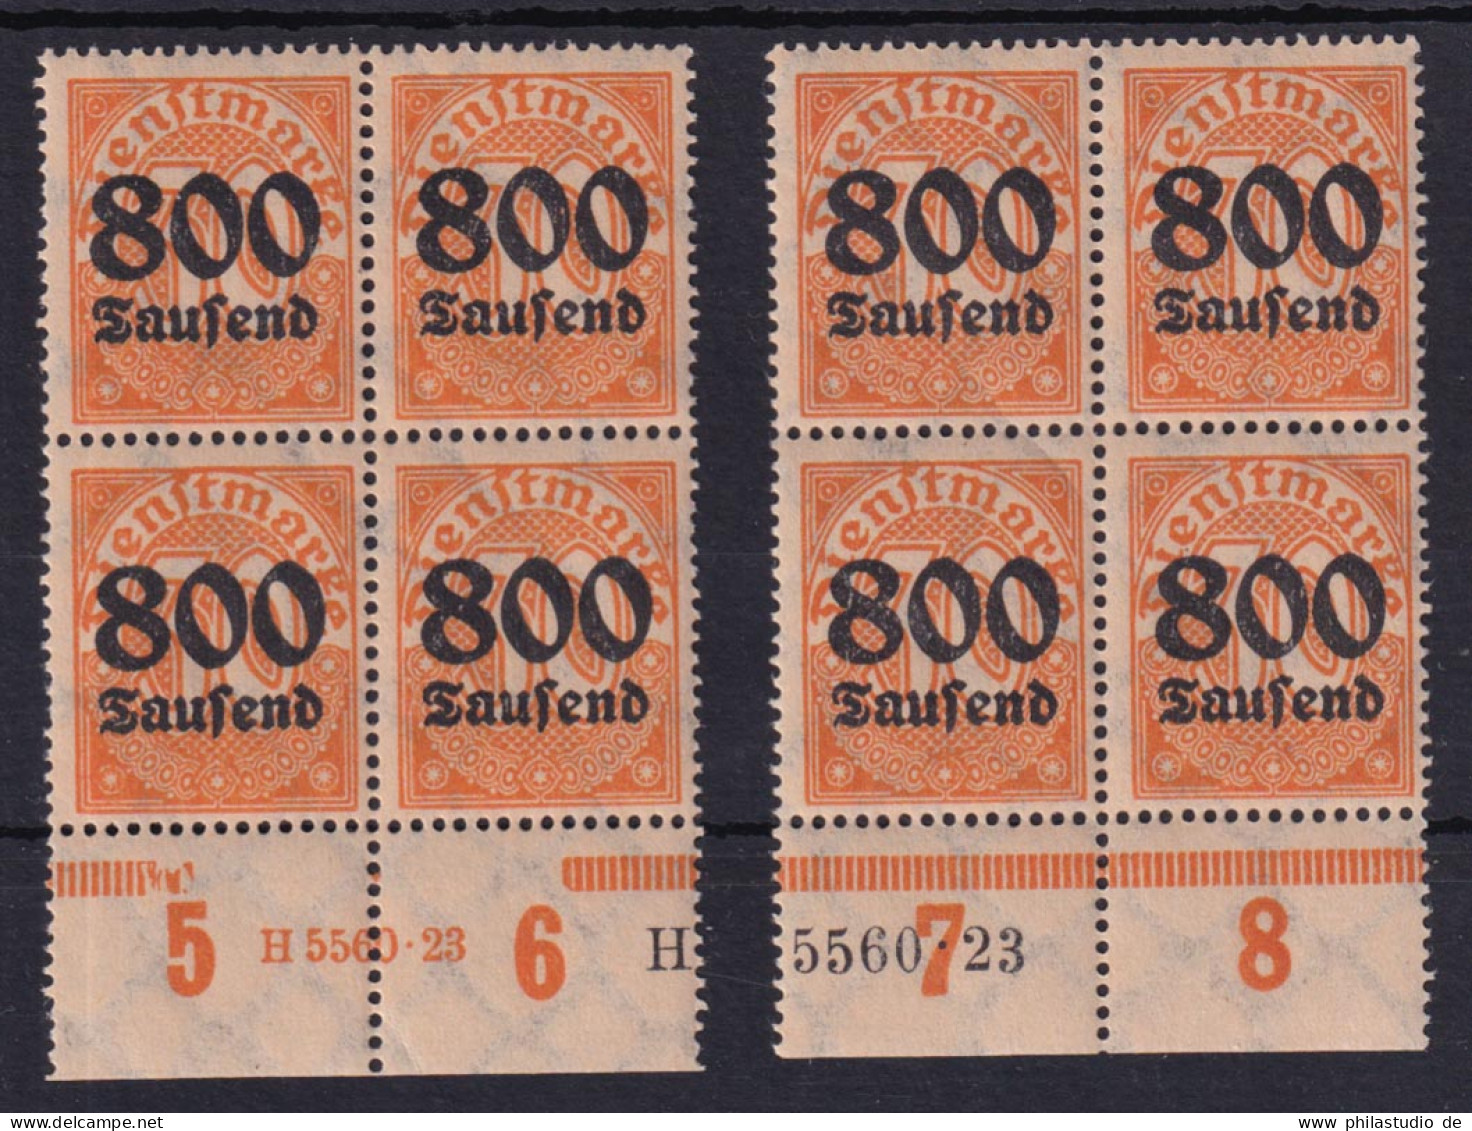 Deutsches Reich 2x Dienst D 95 Unterrand 4er Block 800 Tsd (M) Auf 30 Pf ** - Dienstzegels